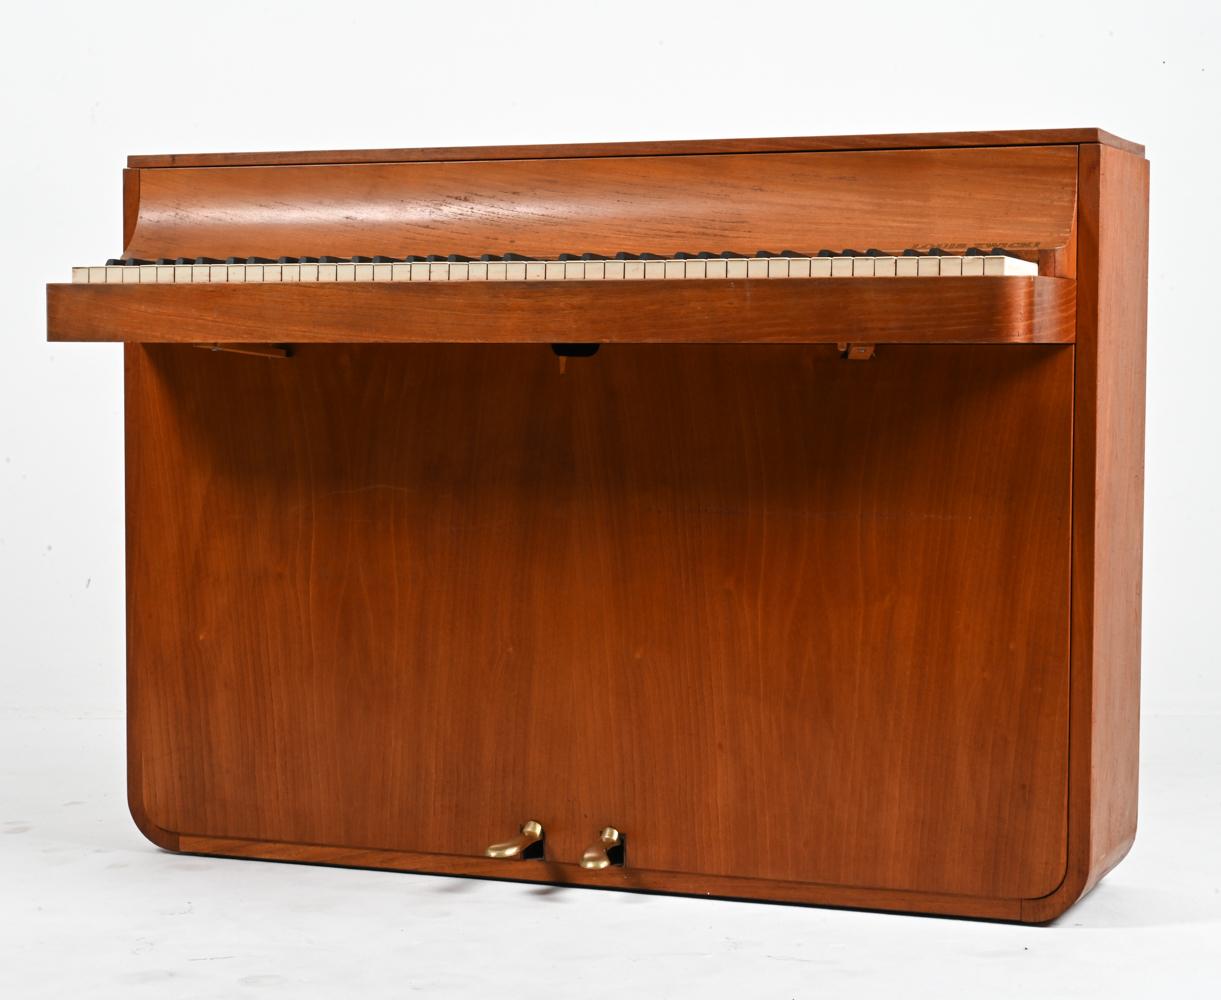 Versetzen Sie sich mit diesem meisterhaft gefertigten dänischen Teakholz-Klavier aus der Mitte des Jahrhunderts des renommierten Louis Zwicki in die Vergangenheit. Aus dem Herzen der 1960er Jahre, einer Zeit, in der Design und Handwerkskunst in